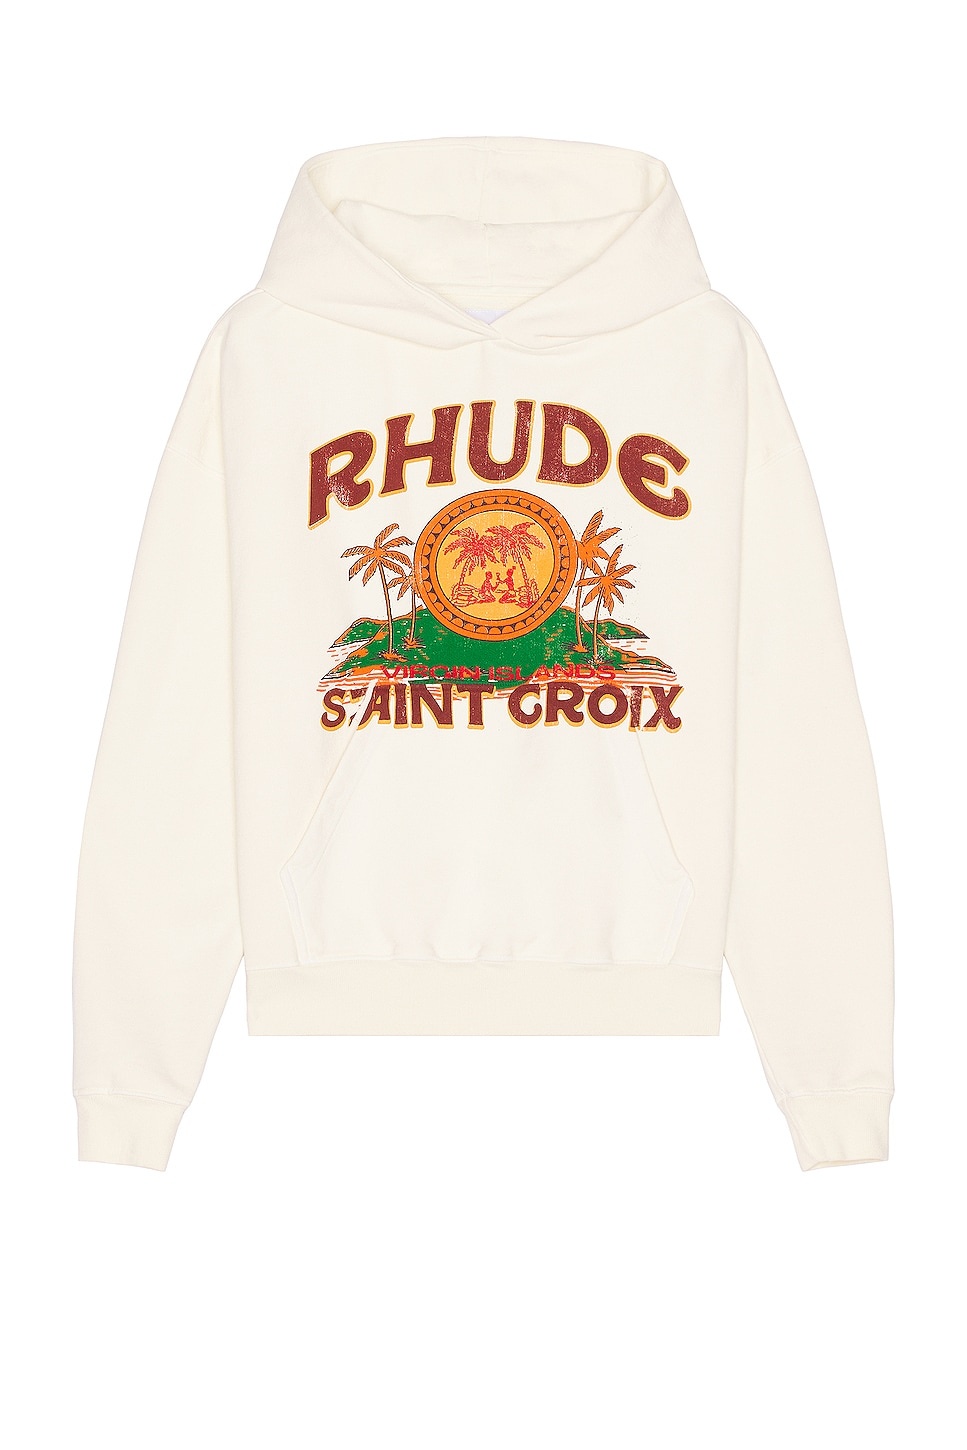 Rhude St. Croix Hoodie - 1